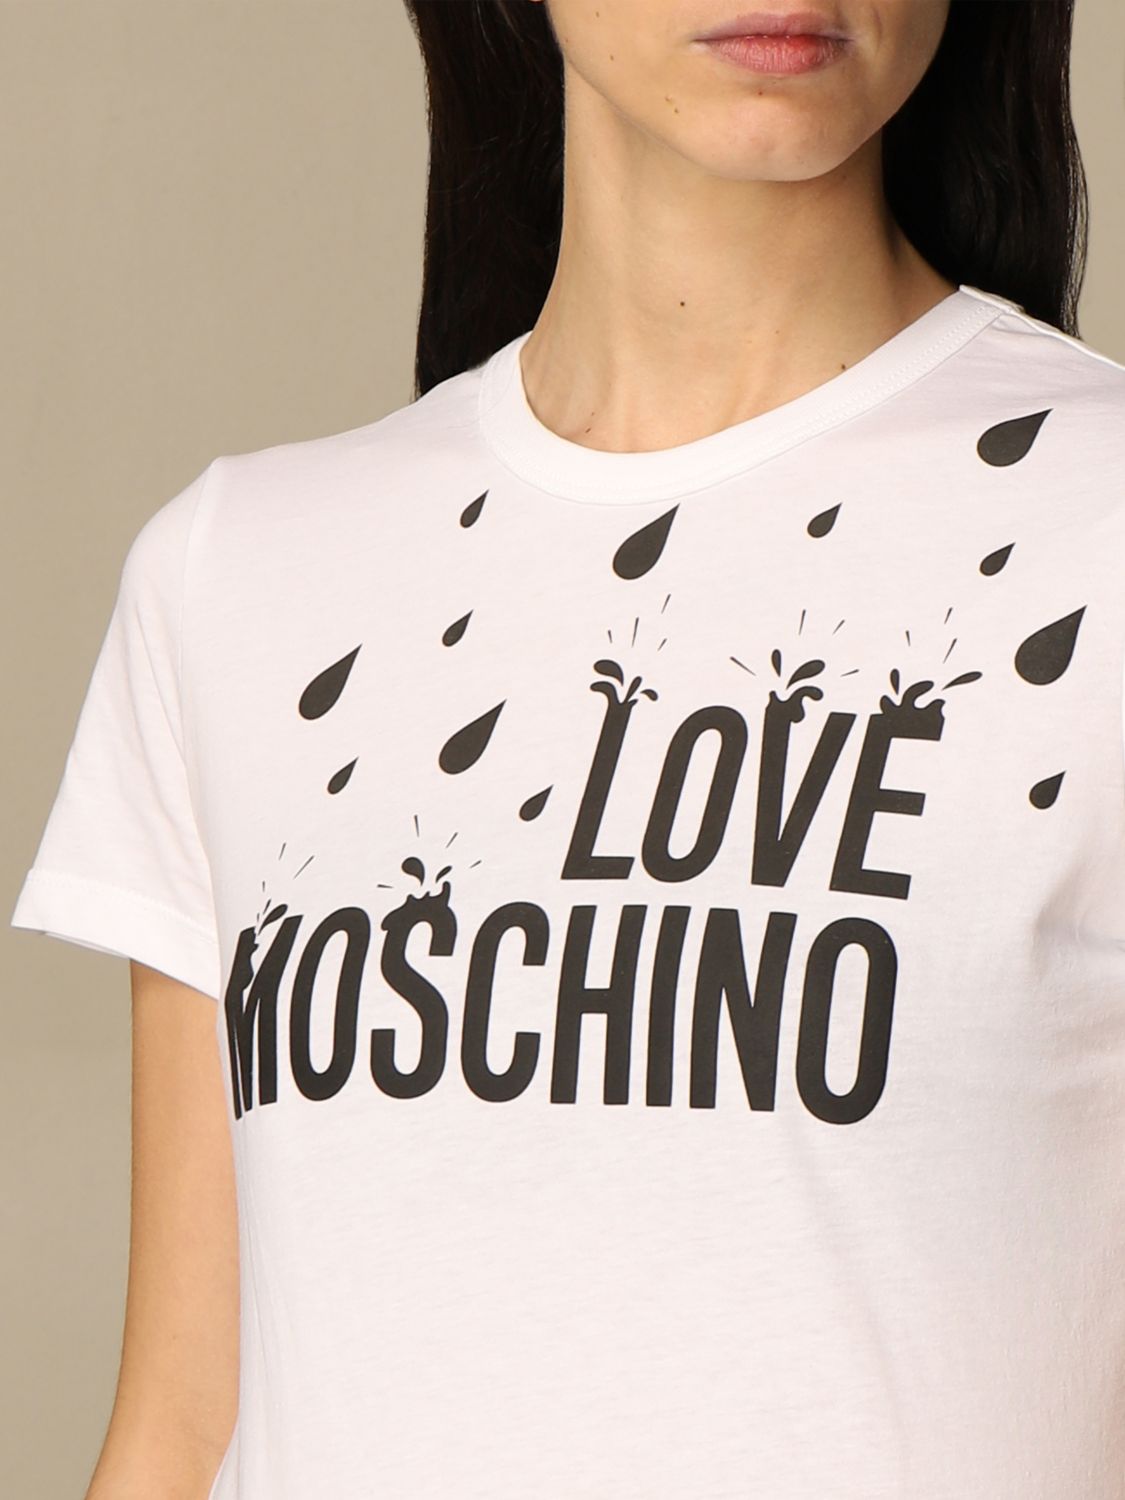 Pas cher et élégant Love Moschino T Shirt Femme Bonne affaire Un ...